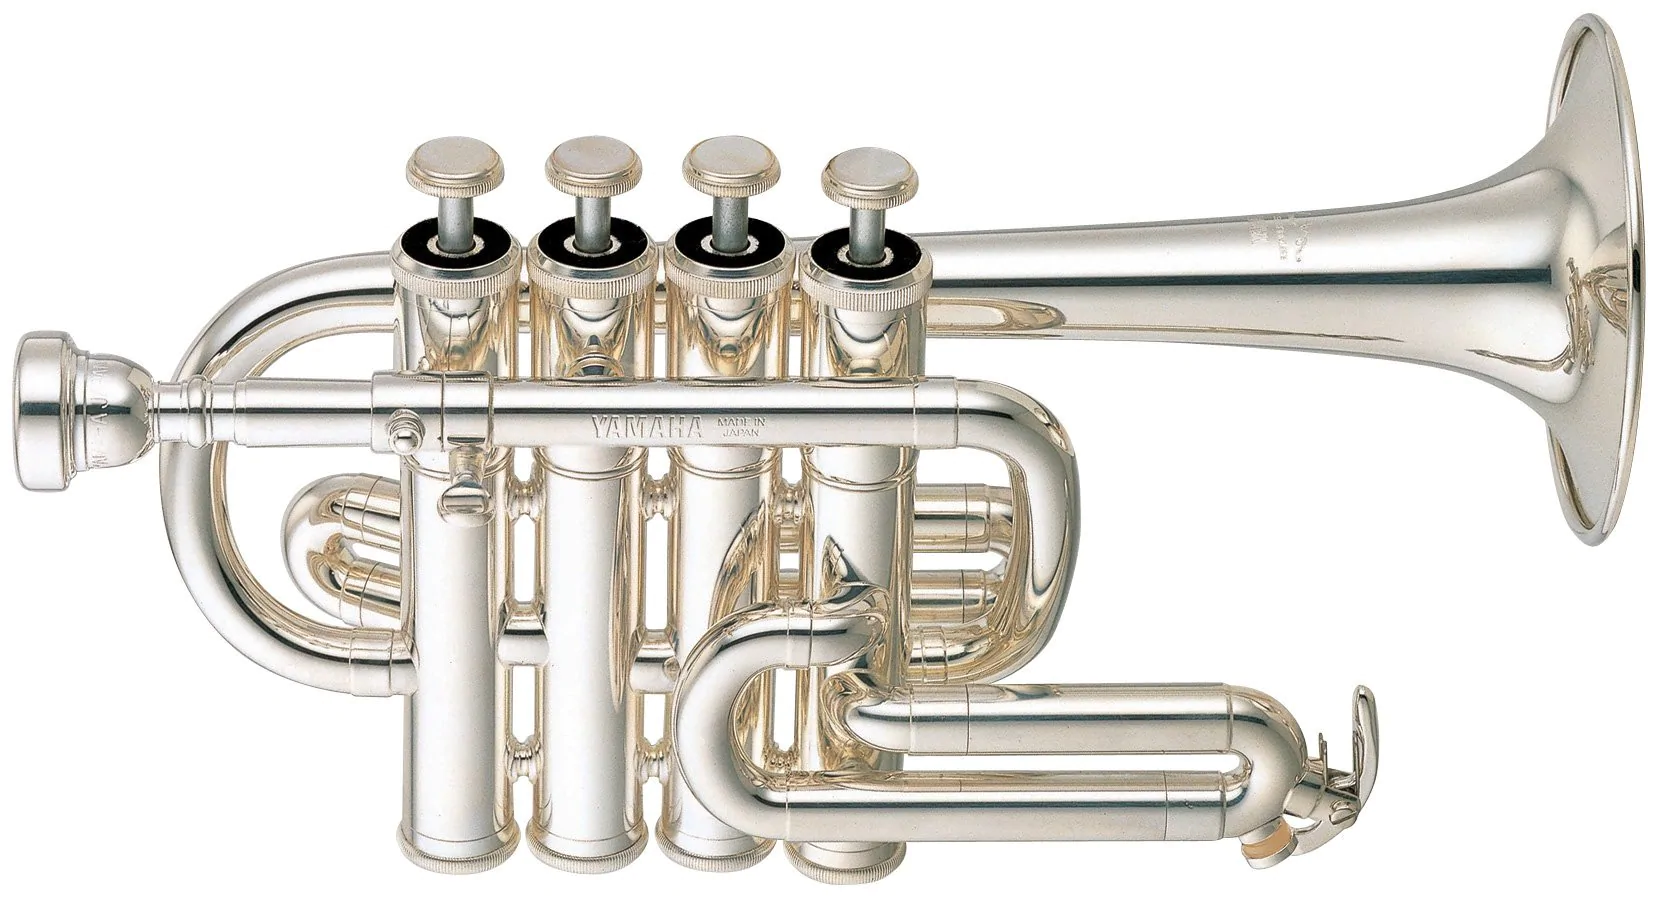 Купить трубу музыкальный инструмент. Yamaha YTR-3335s труба. Труба-Пикколо музыкальный инструмент. Yamaha труба Yamaha YTR-6345gs. Roy Benson tr-402c s труба.